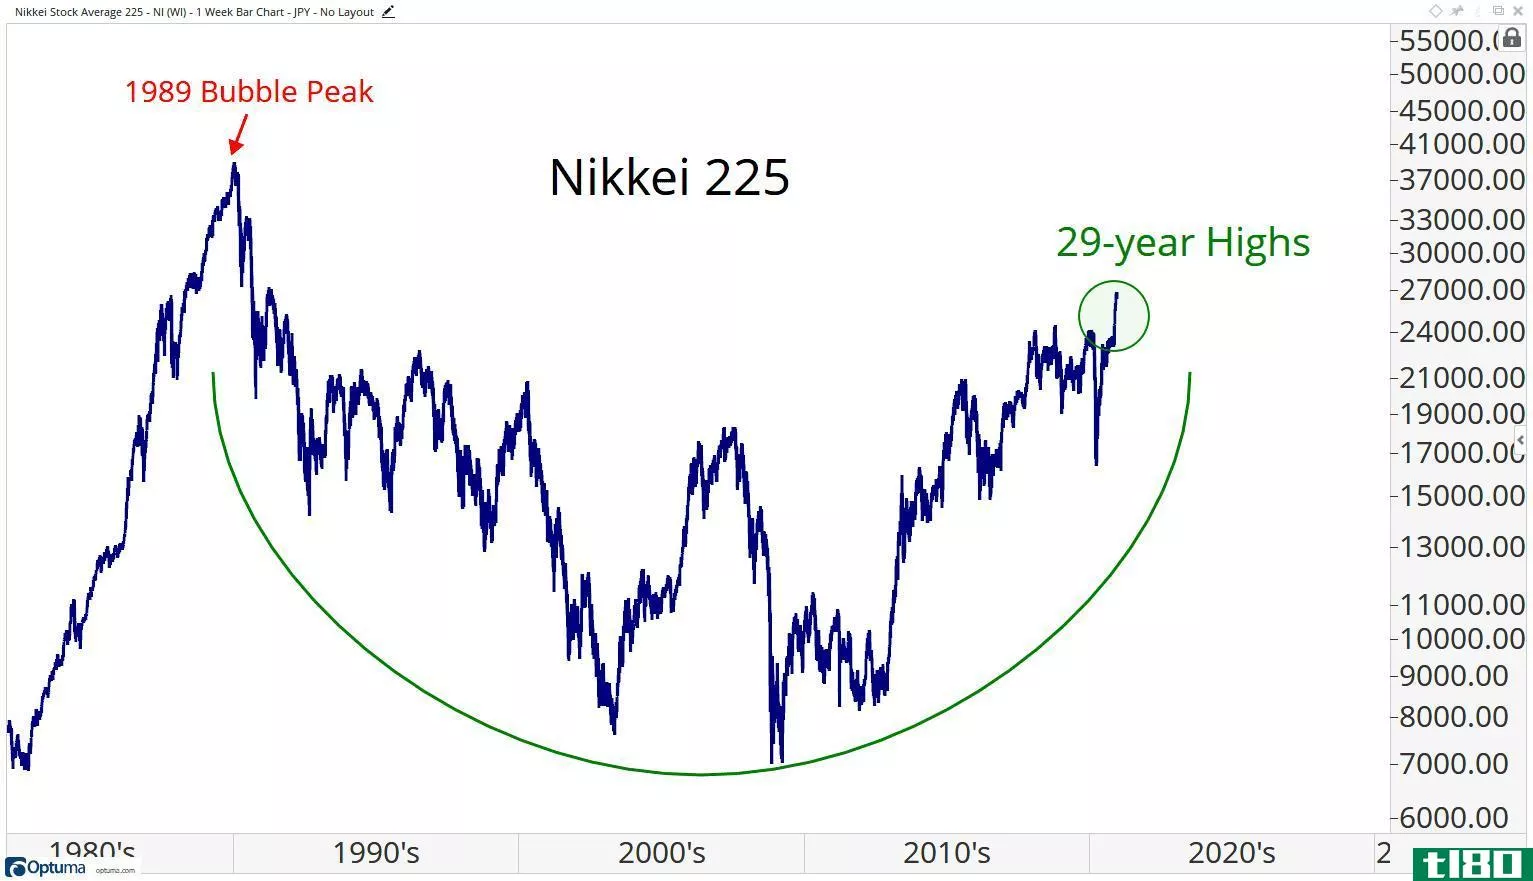 Japan 1989 bubble